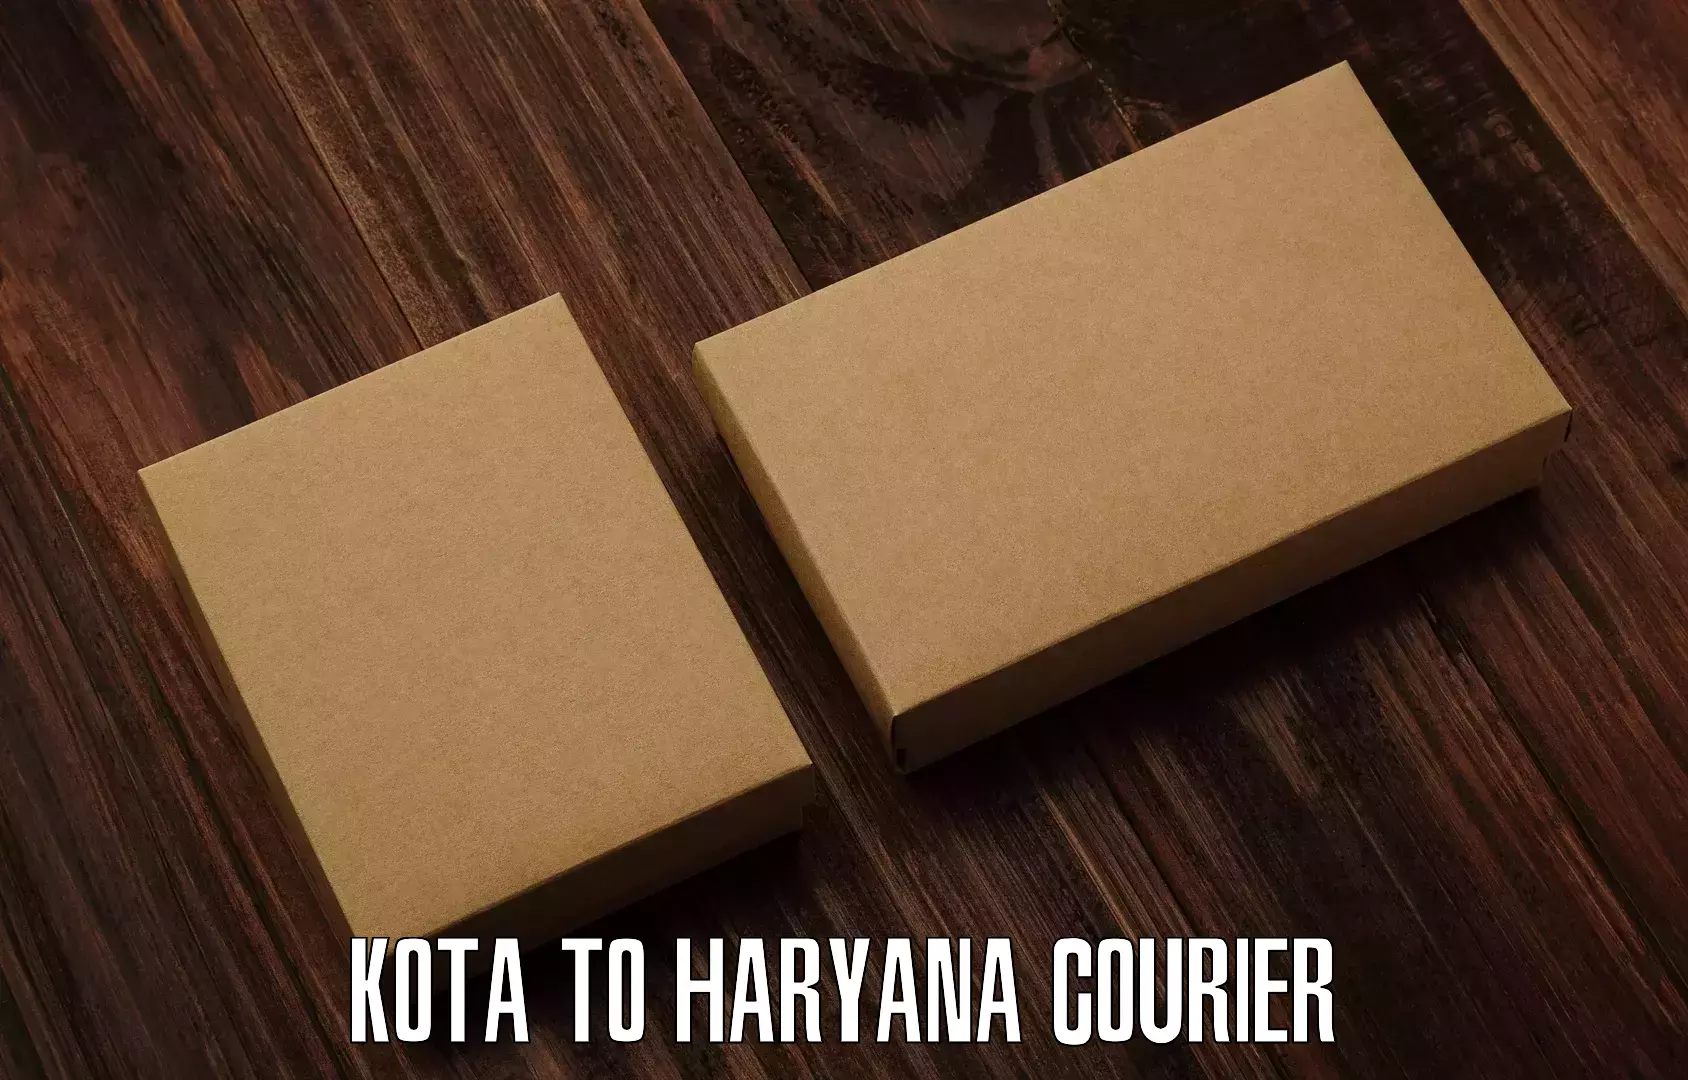 Express logistics service Kota to Haryana